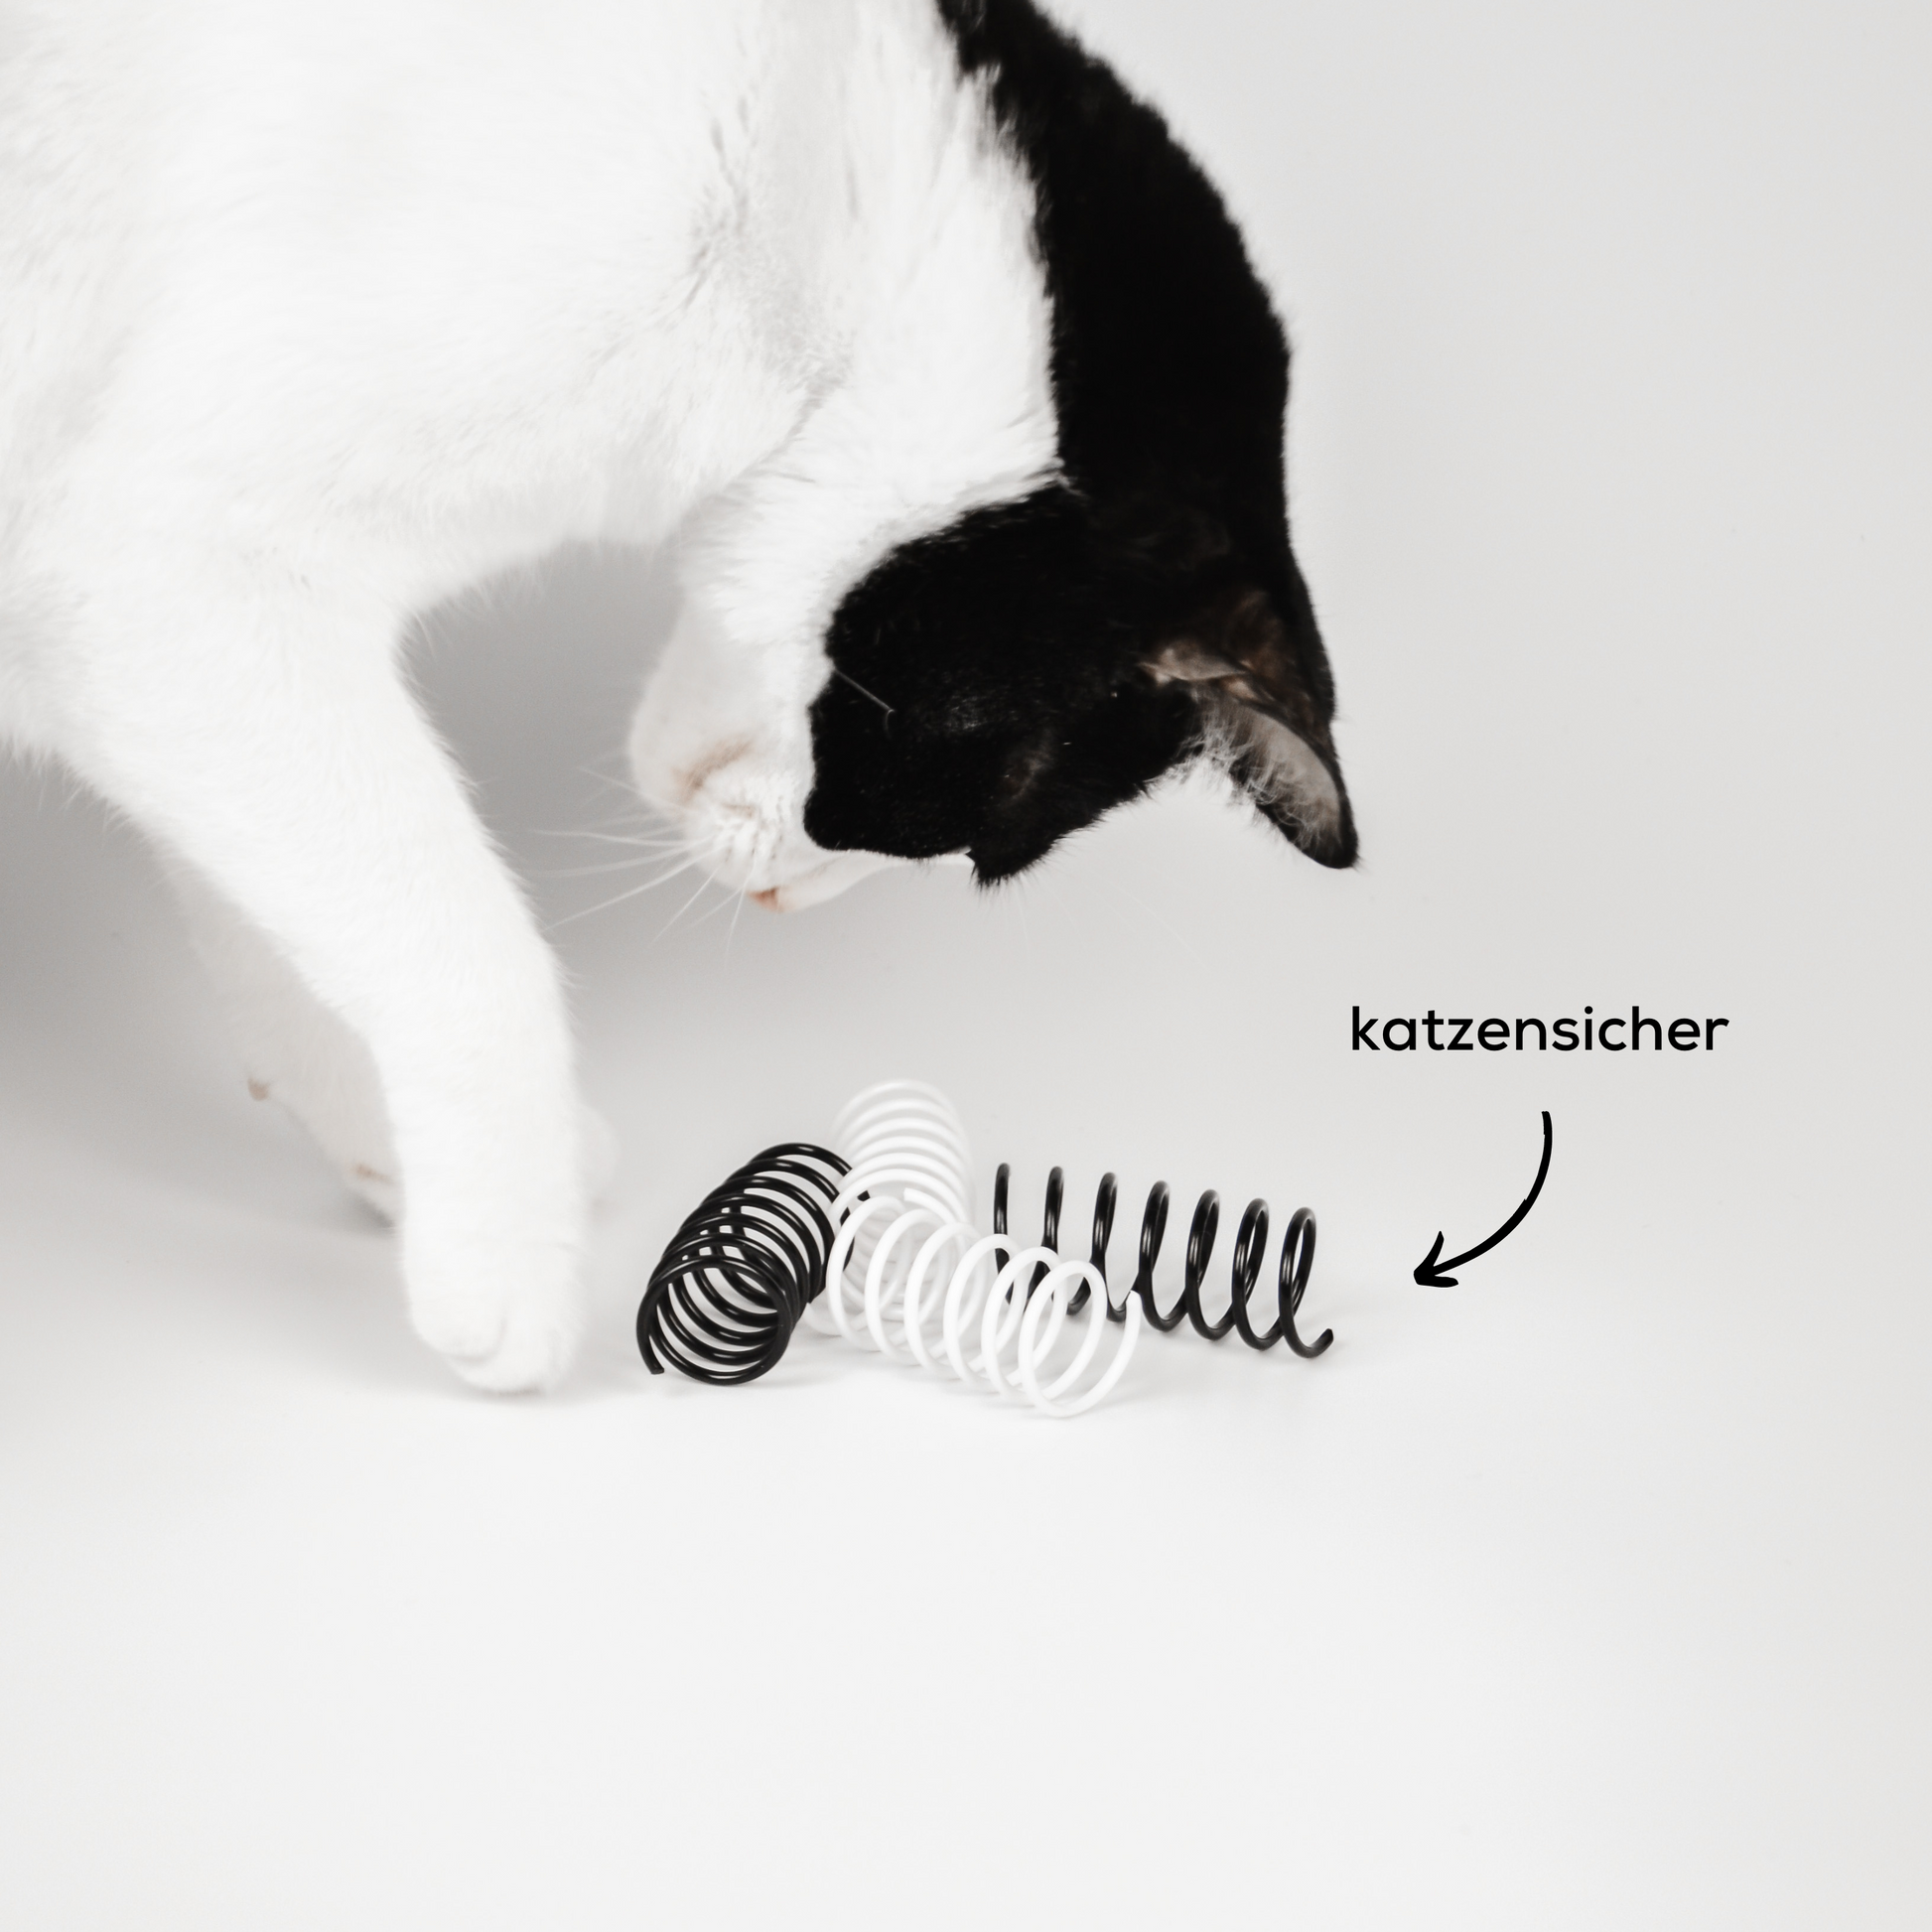 Katze spielt mit interaktivem Katzenspielzeug Spiralfeder Spielzeug für Katzen in schwarz und weiß.